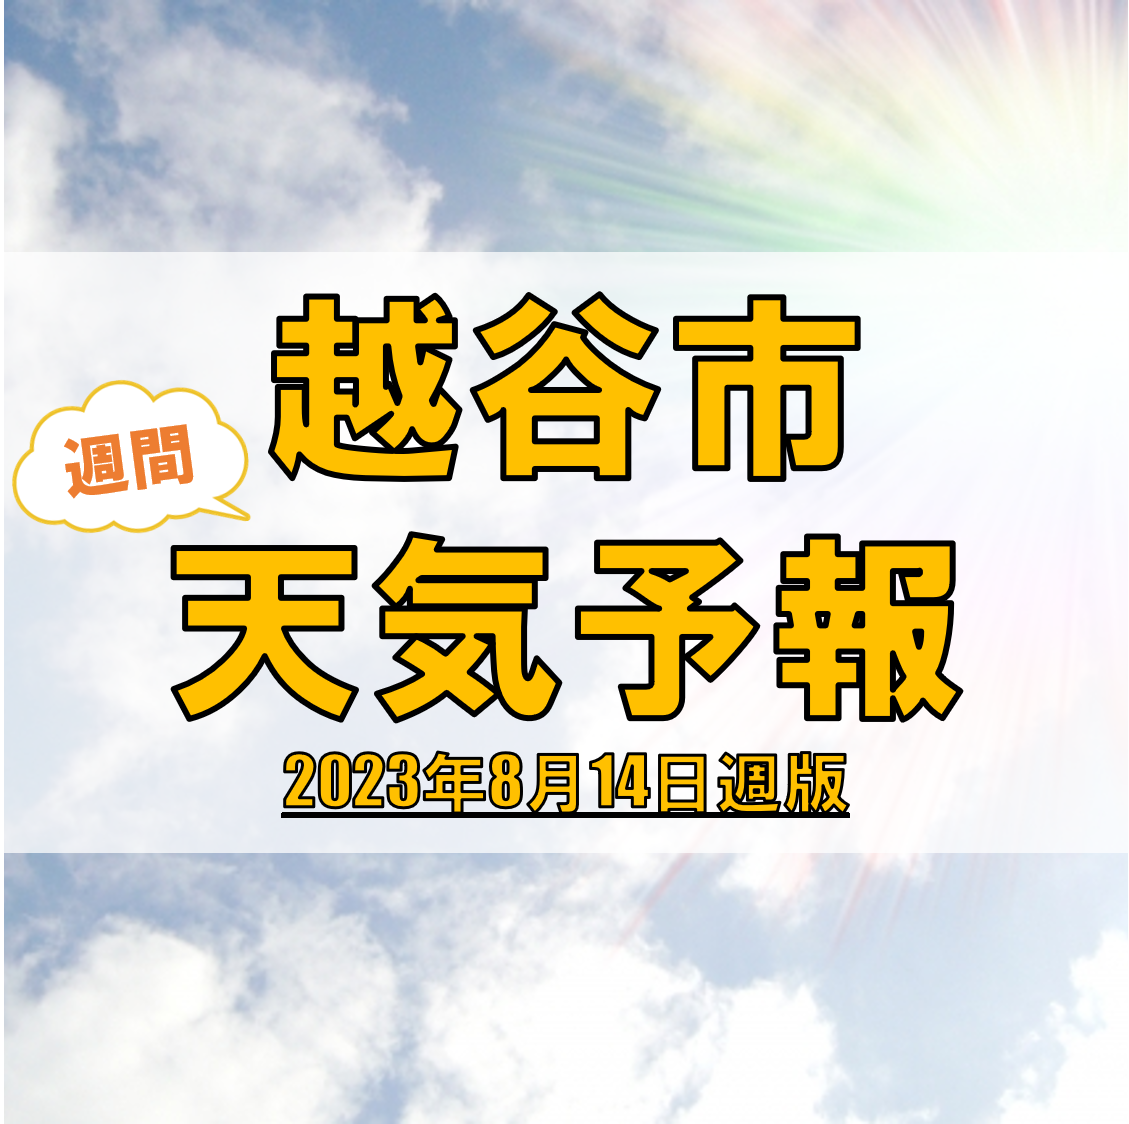 越谷市の天気 週間予報【2023年8月14日週】